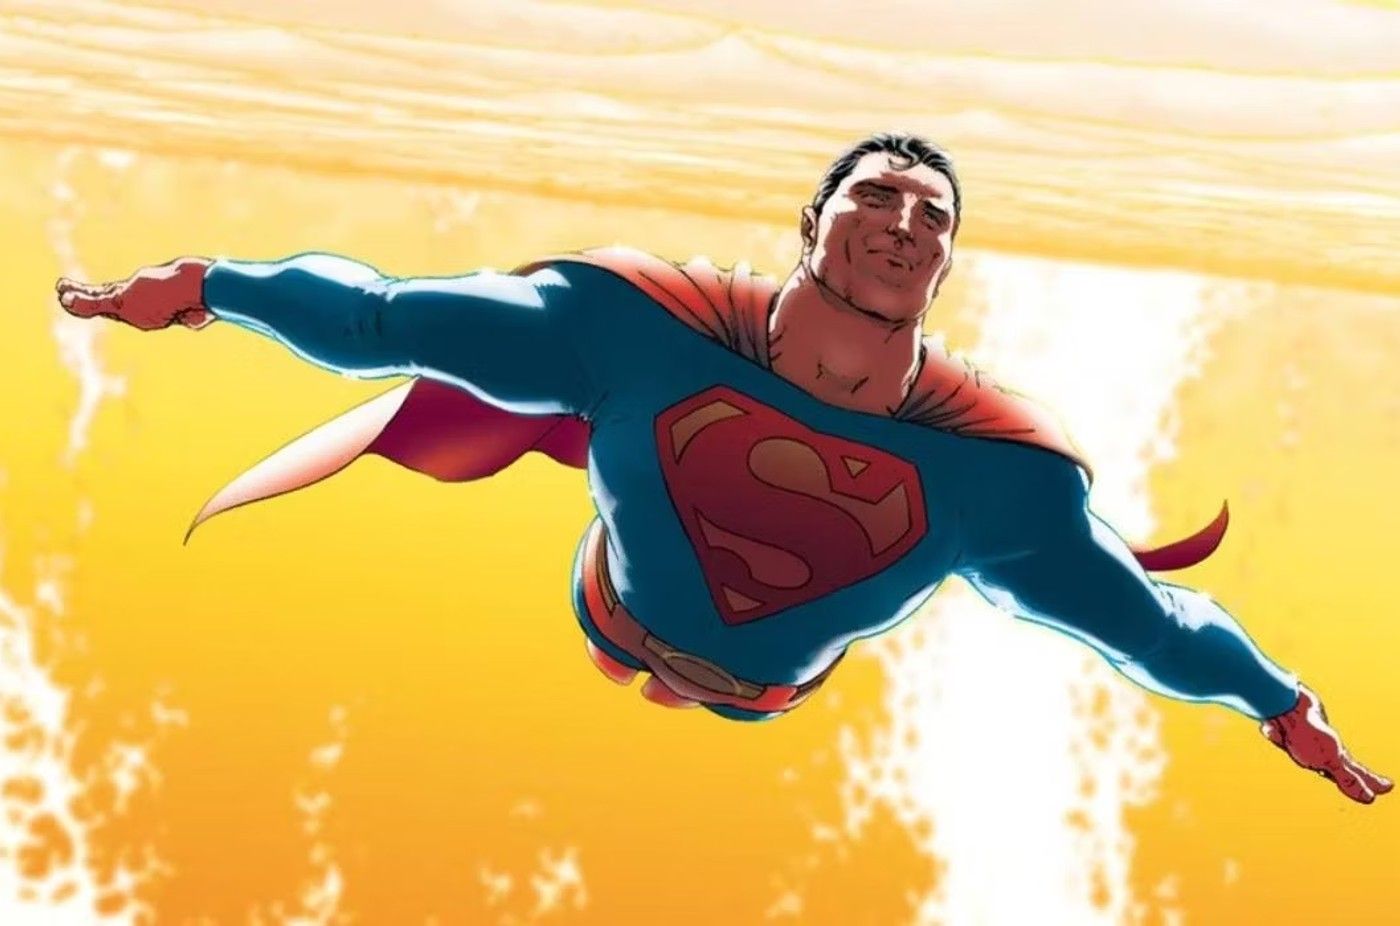 Arte estelar de Superman donde vuela más allá de un sol.